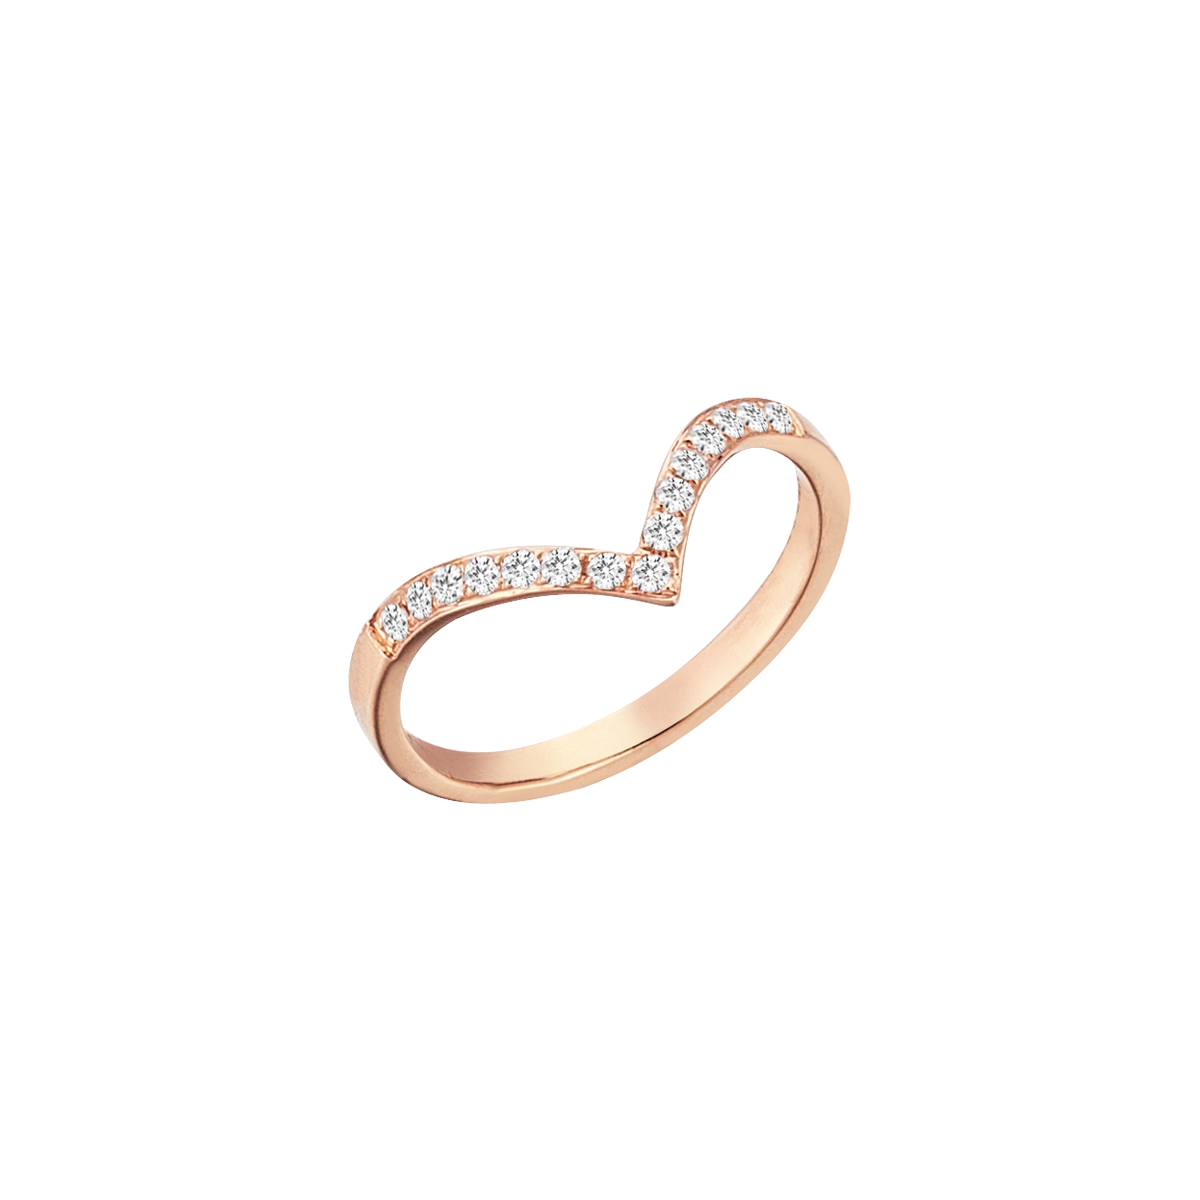 V Diamond Midi Ring in Rose Gold - Her Story Shop